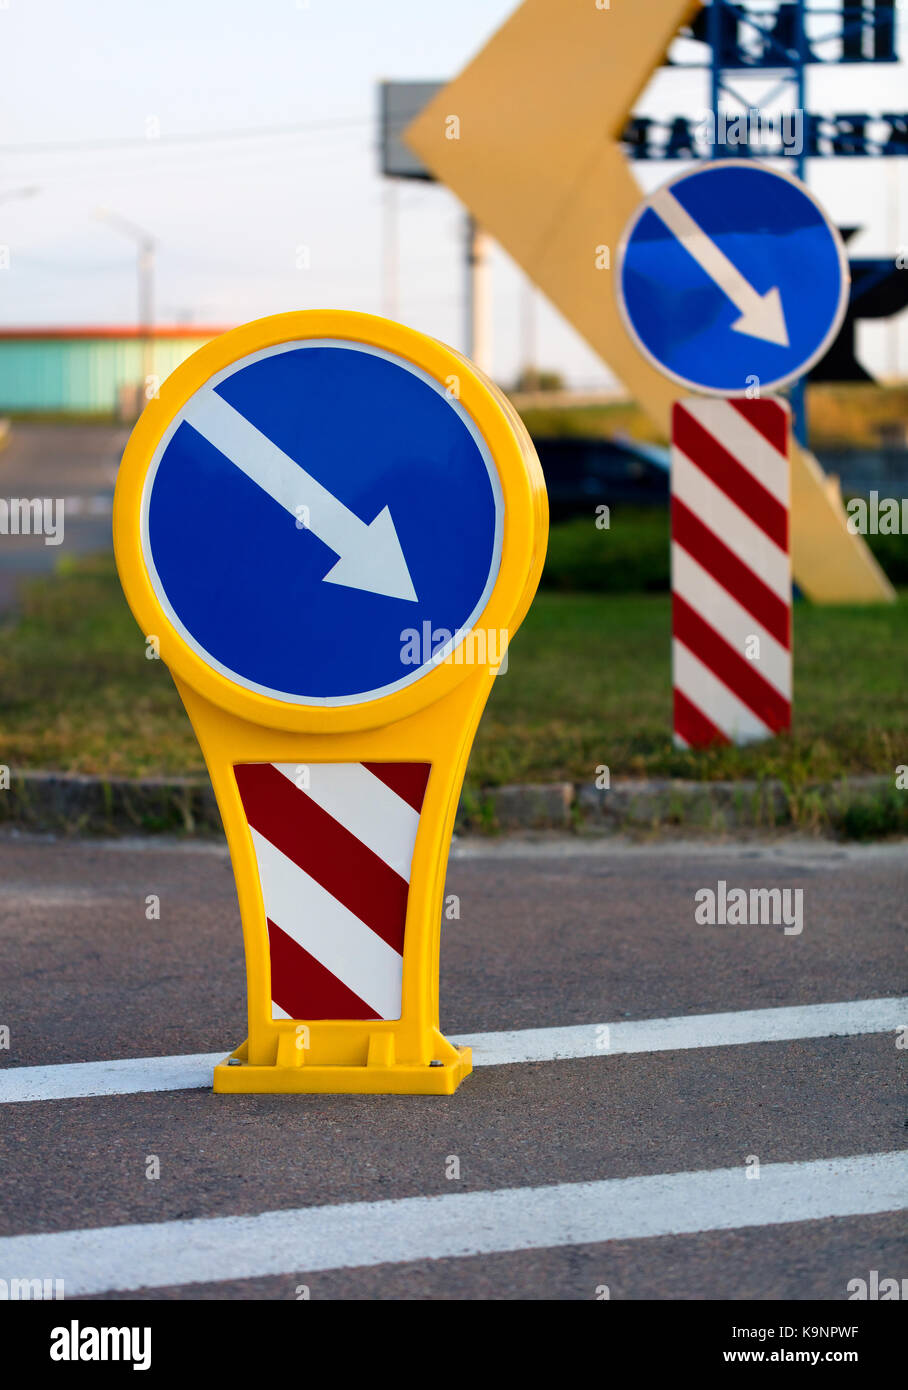 Runde Helle gelb-blauen Schild Umweg auf der rechten Seite mit weiß-rote diagonale Warnung Streifen auf der Straße markieren Stockfoto